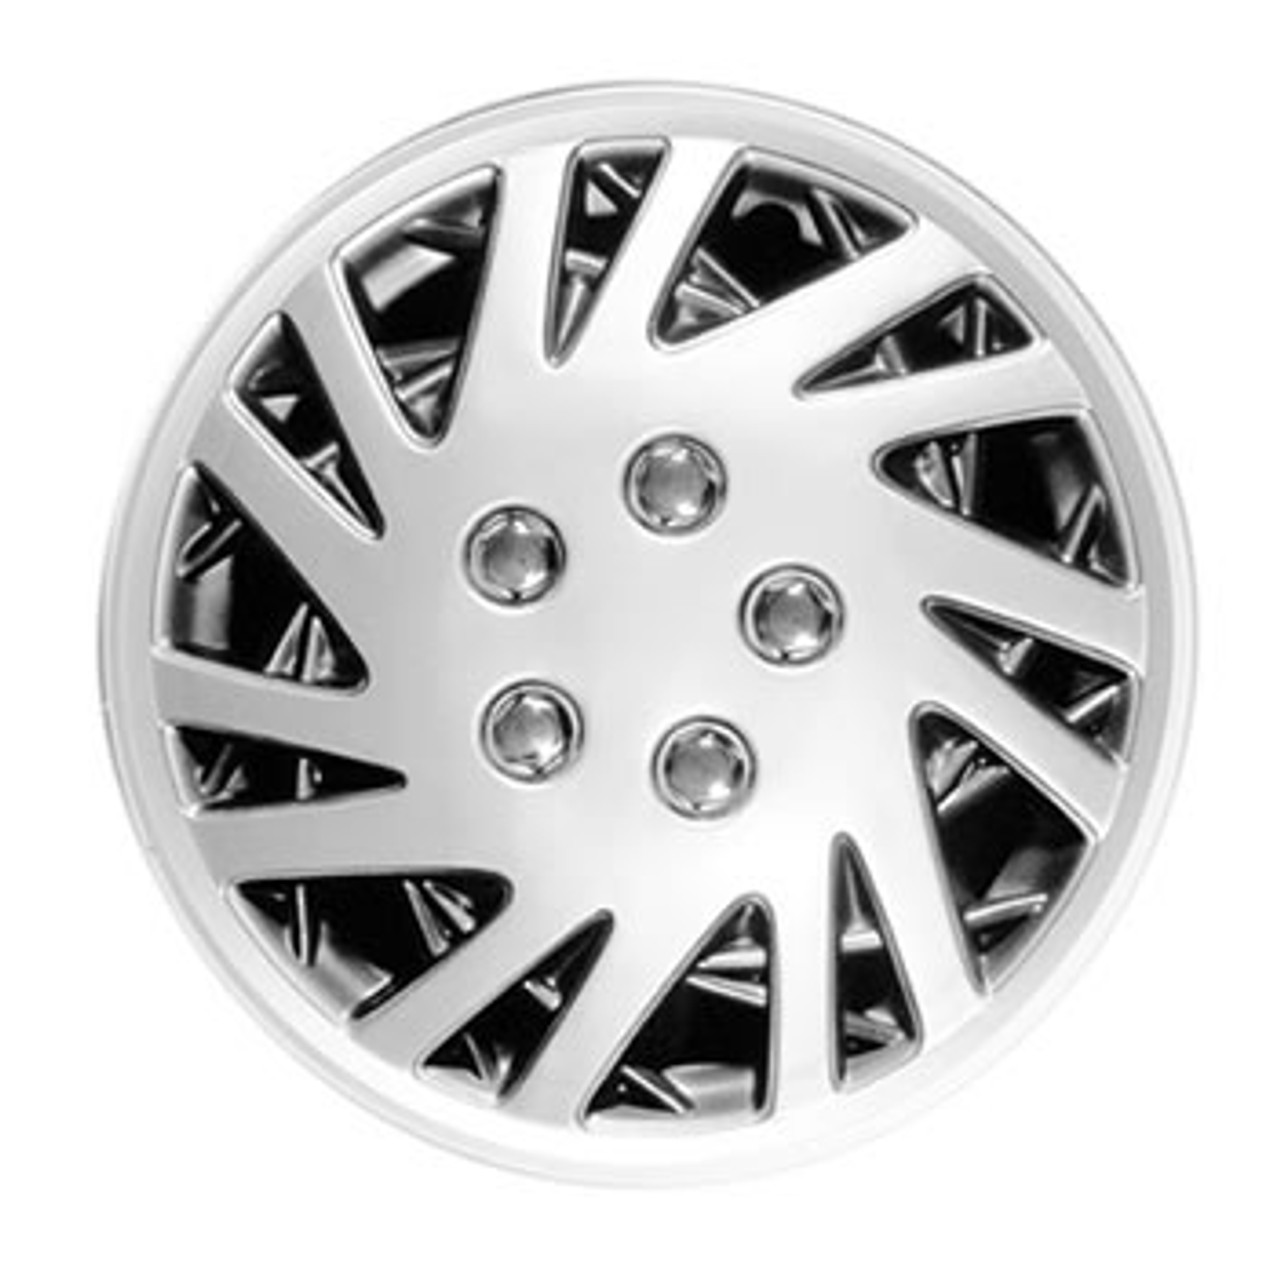 2005 dodge caravan hubcaps